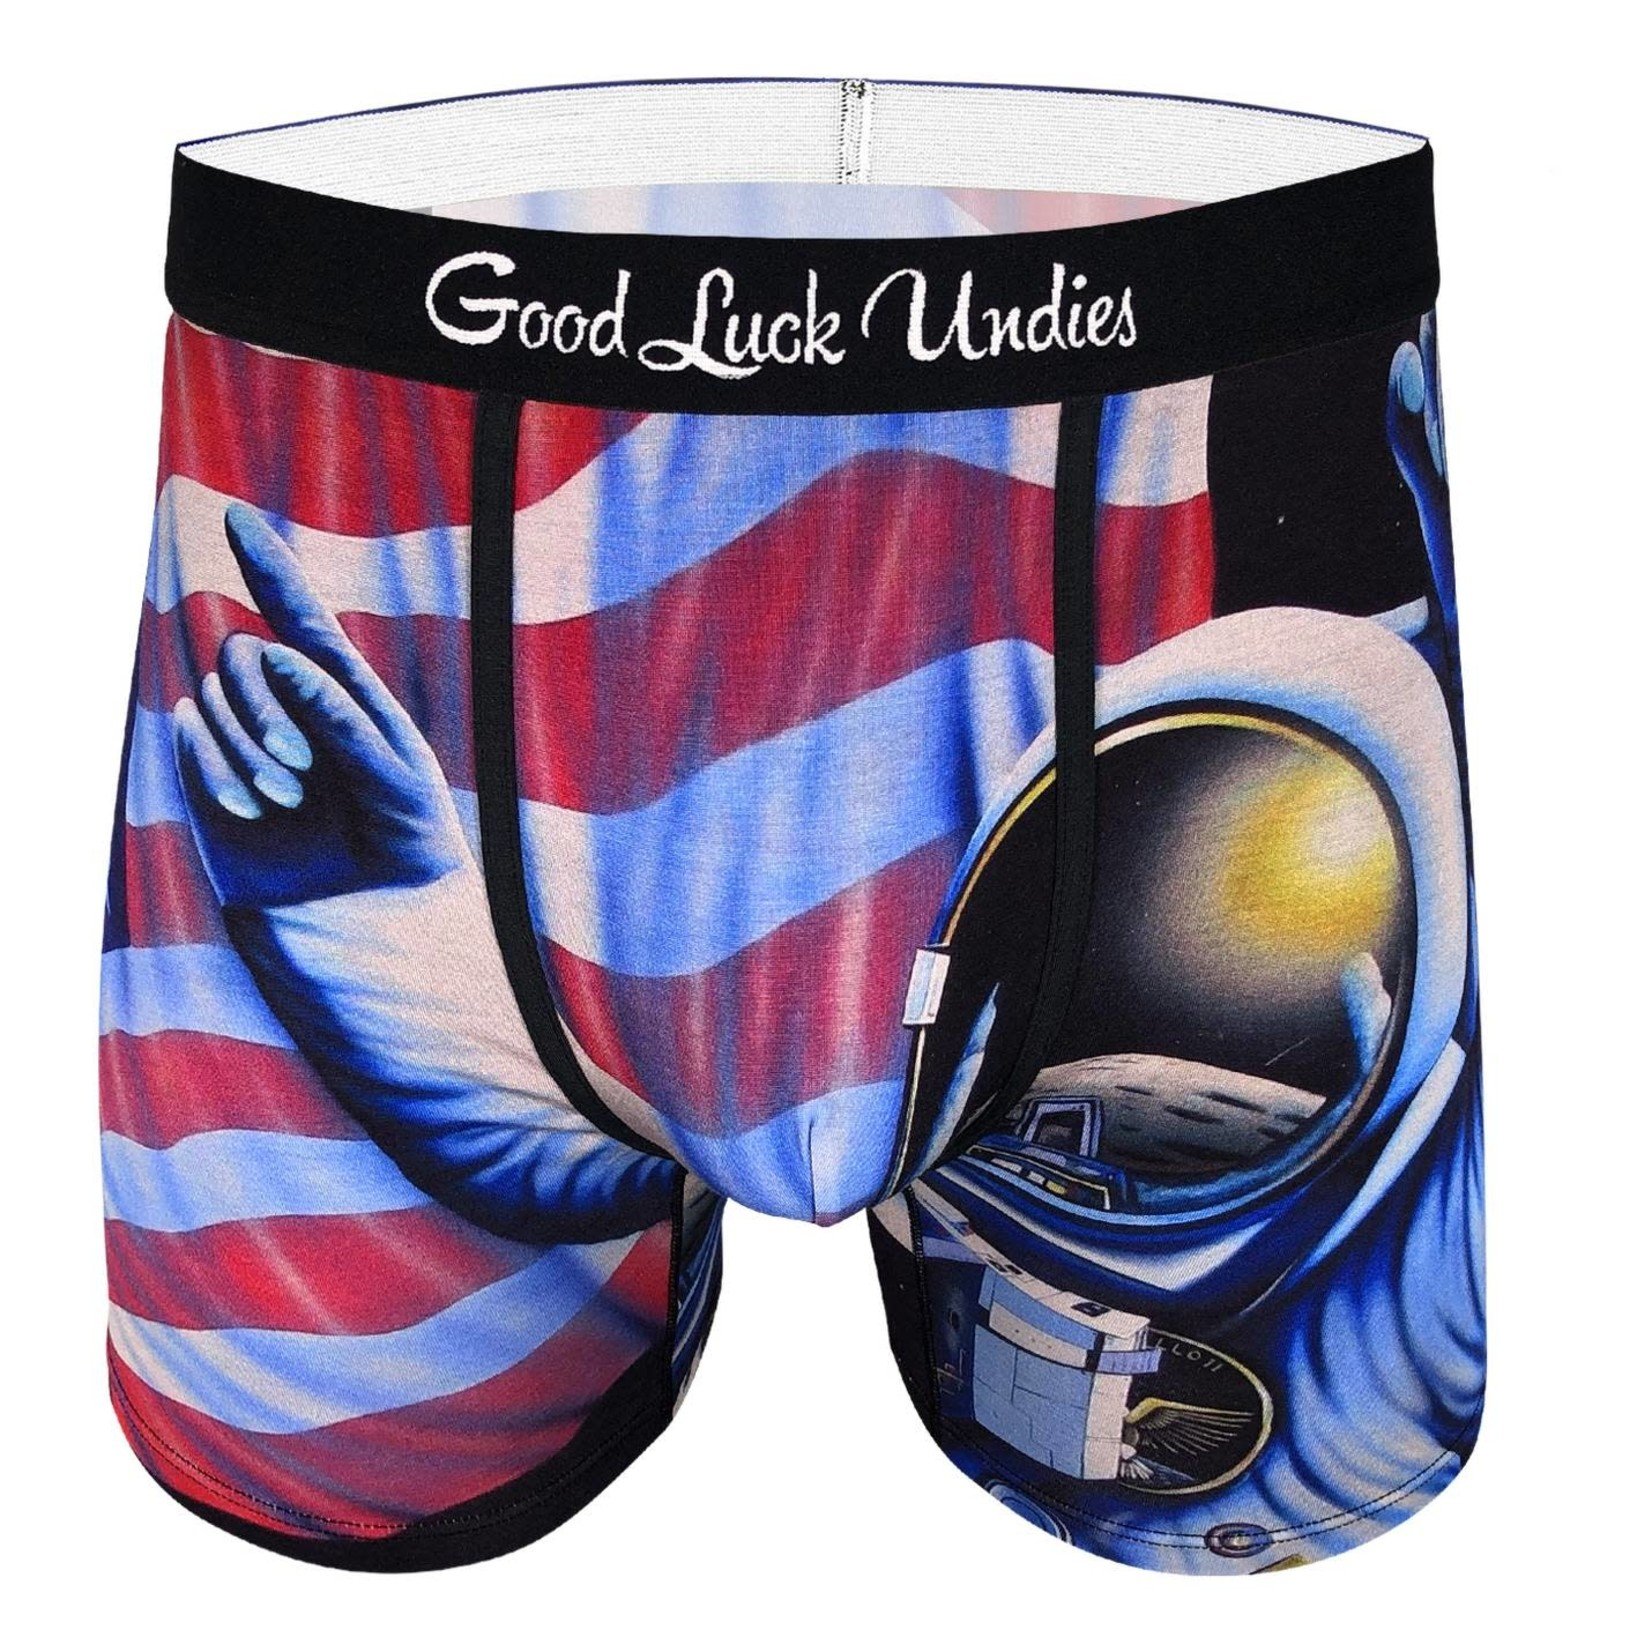 https://cdn.shoplightspeed.com/shops/657667/files/42028417/1652x1652x1/good-luck-undies-astronaut-boxers.jpg